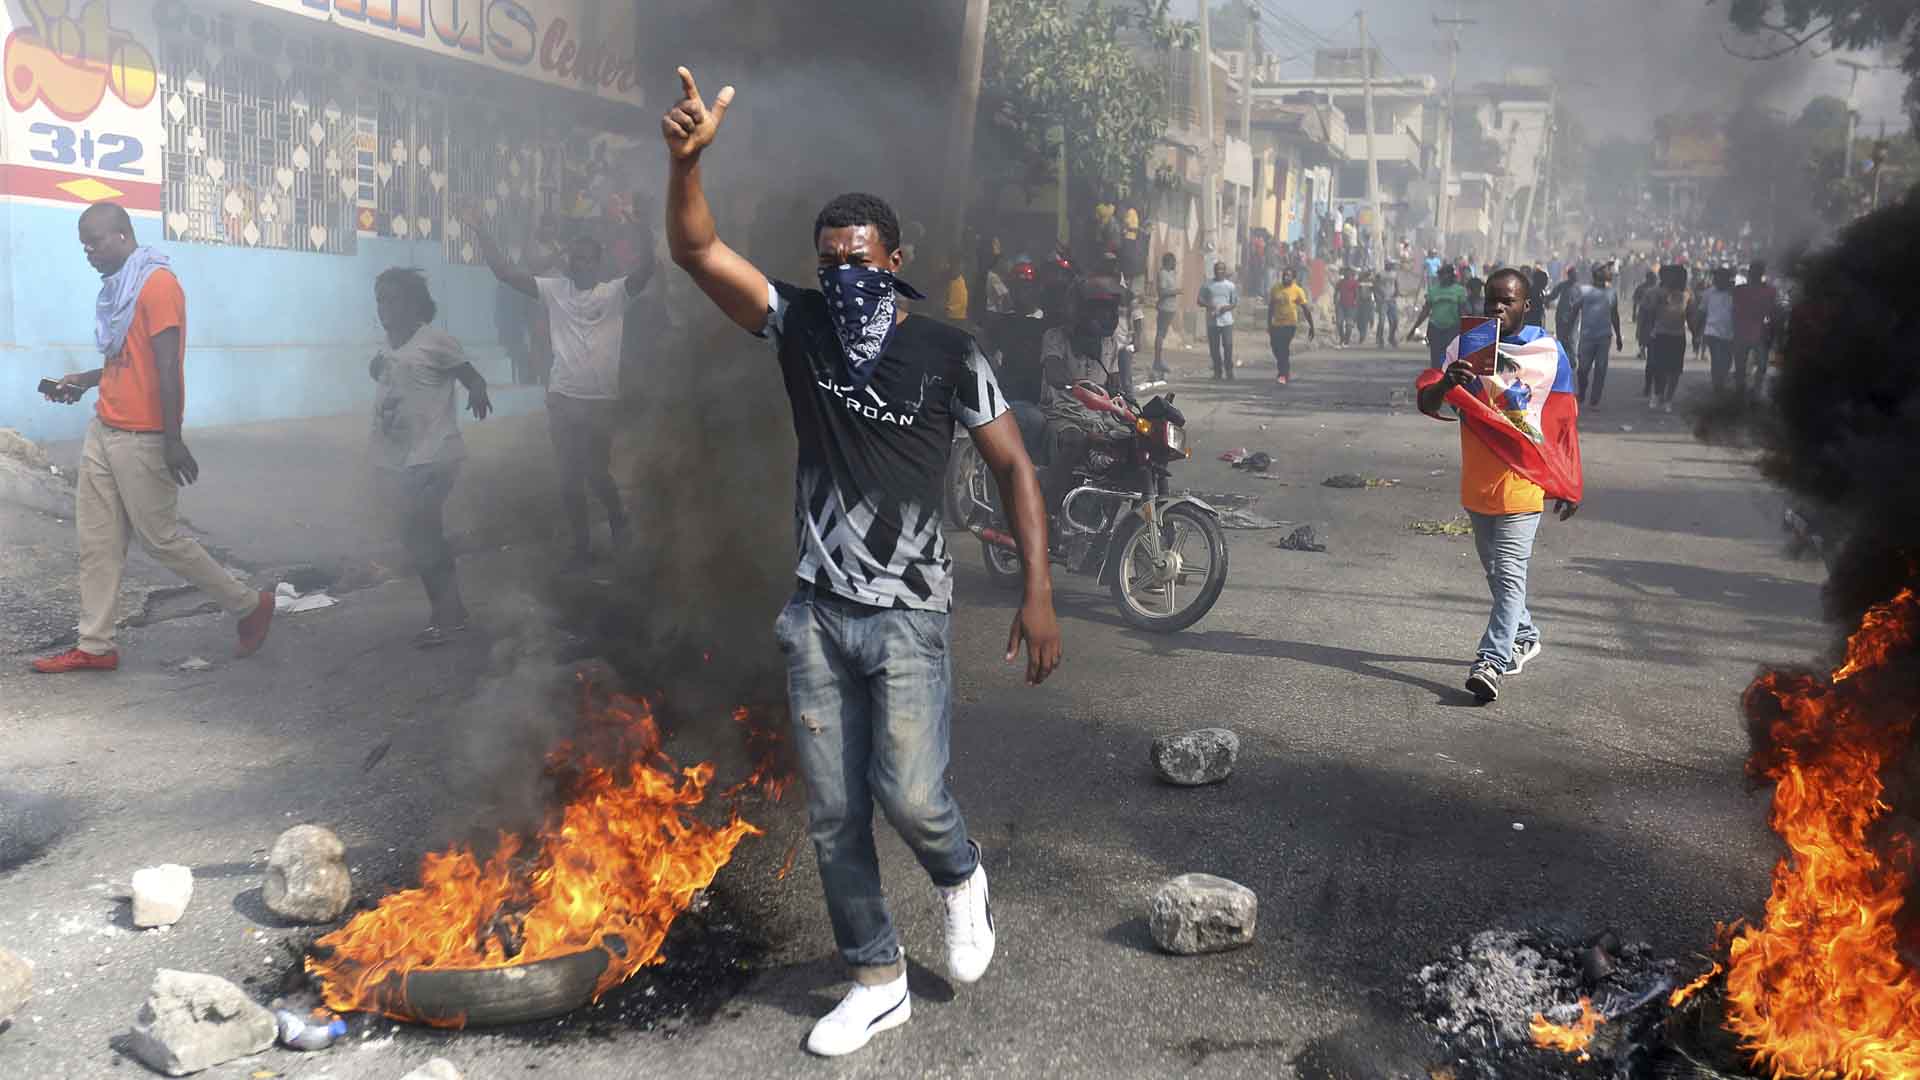 El presidente de Haití llama al diálogo tras las violentas protestas que dejan al menos 9 muertos